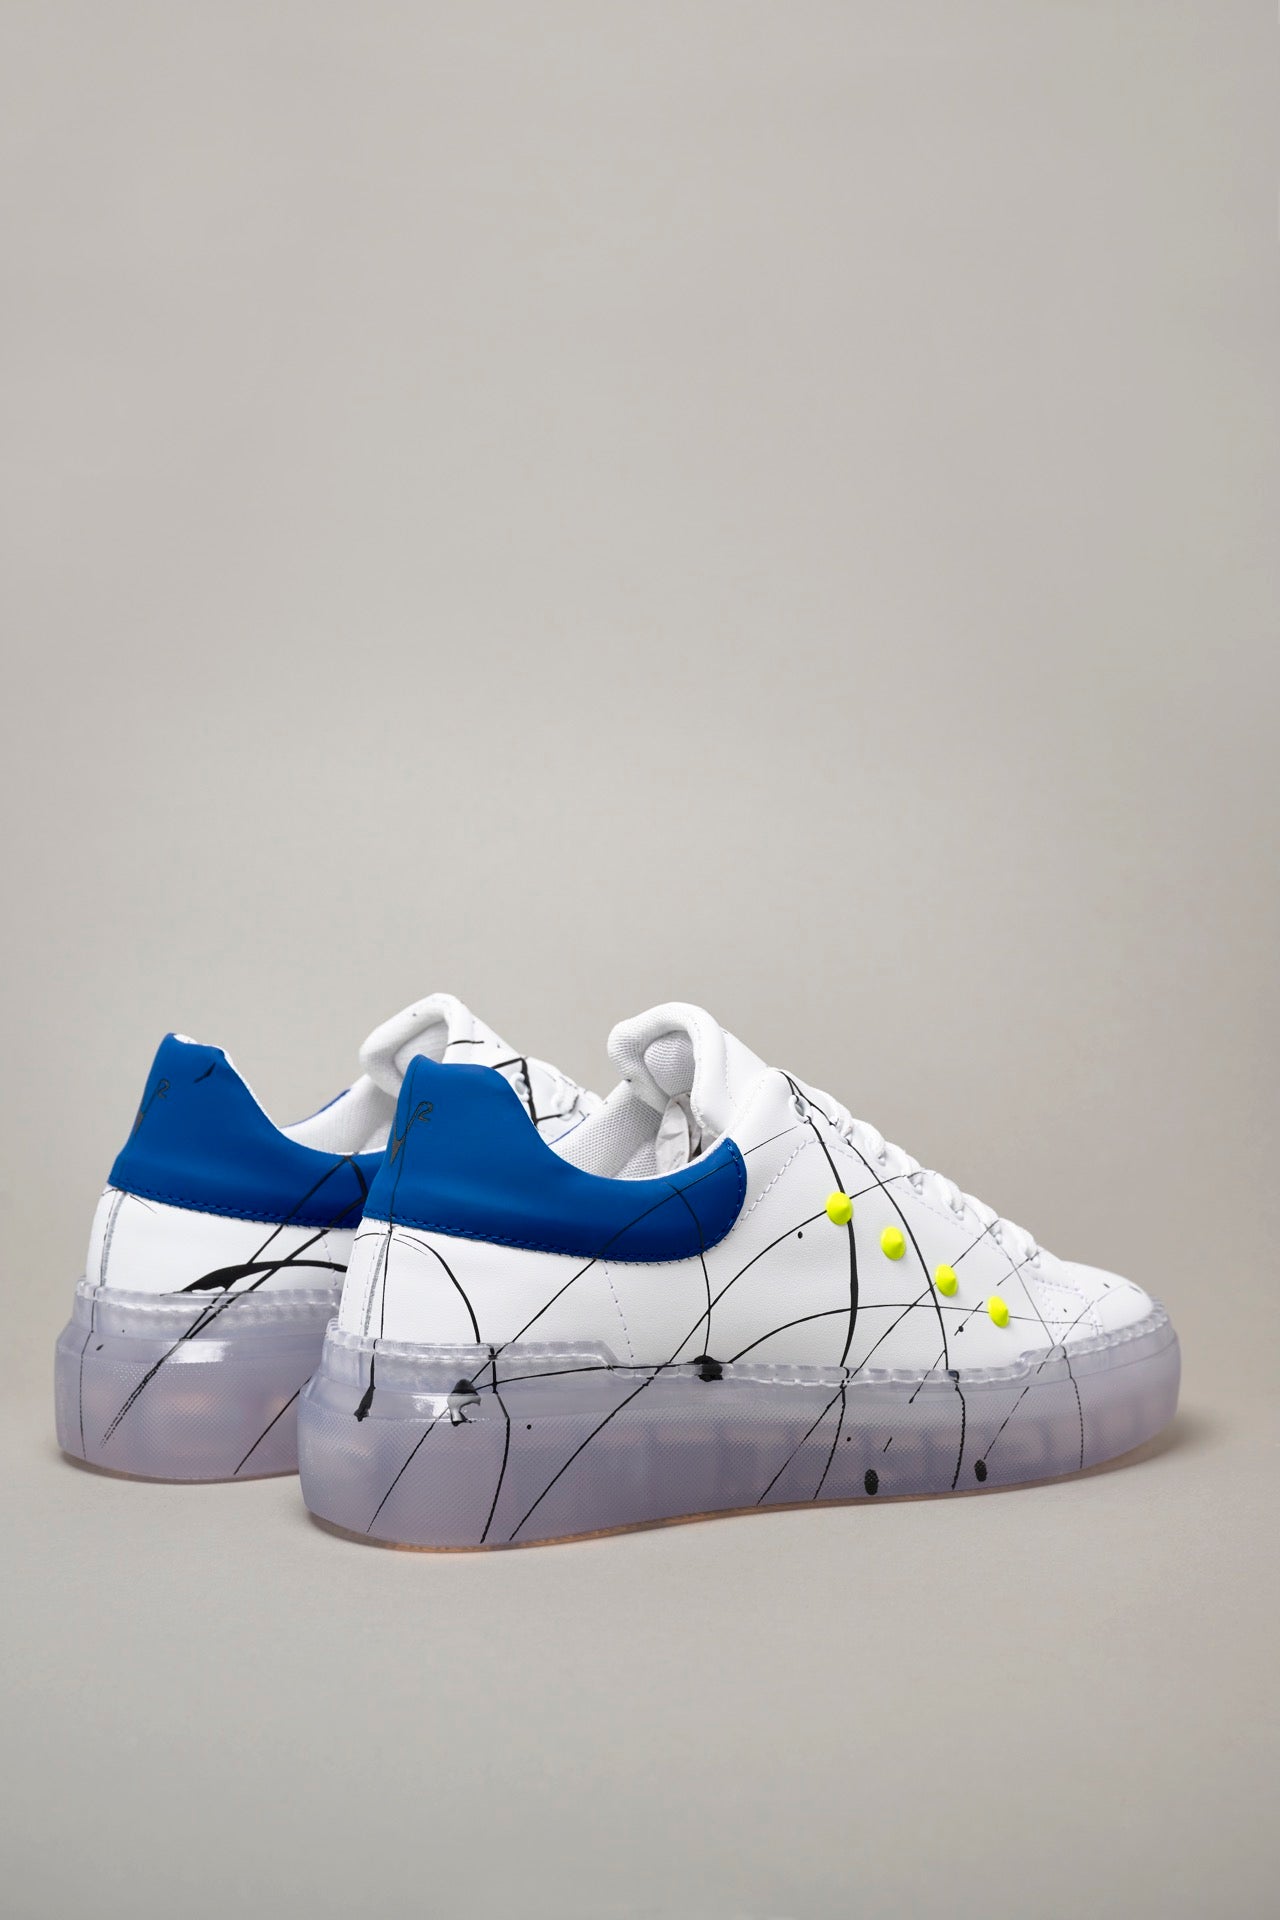 GALAXY - Sneakers a suola alta trasparente retro Blu Royal con borchie Giallo Fluo e schizzi di Vernice